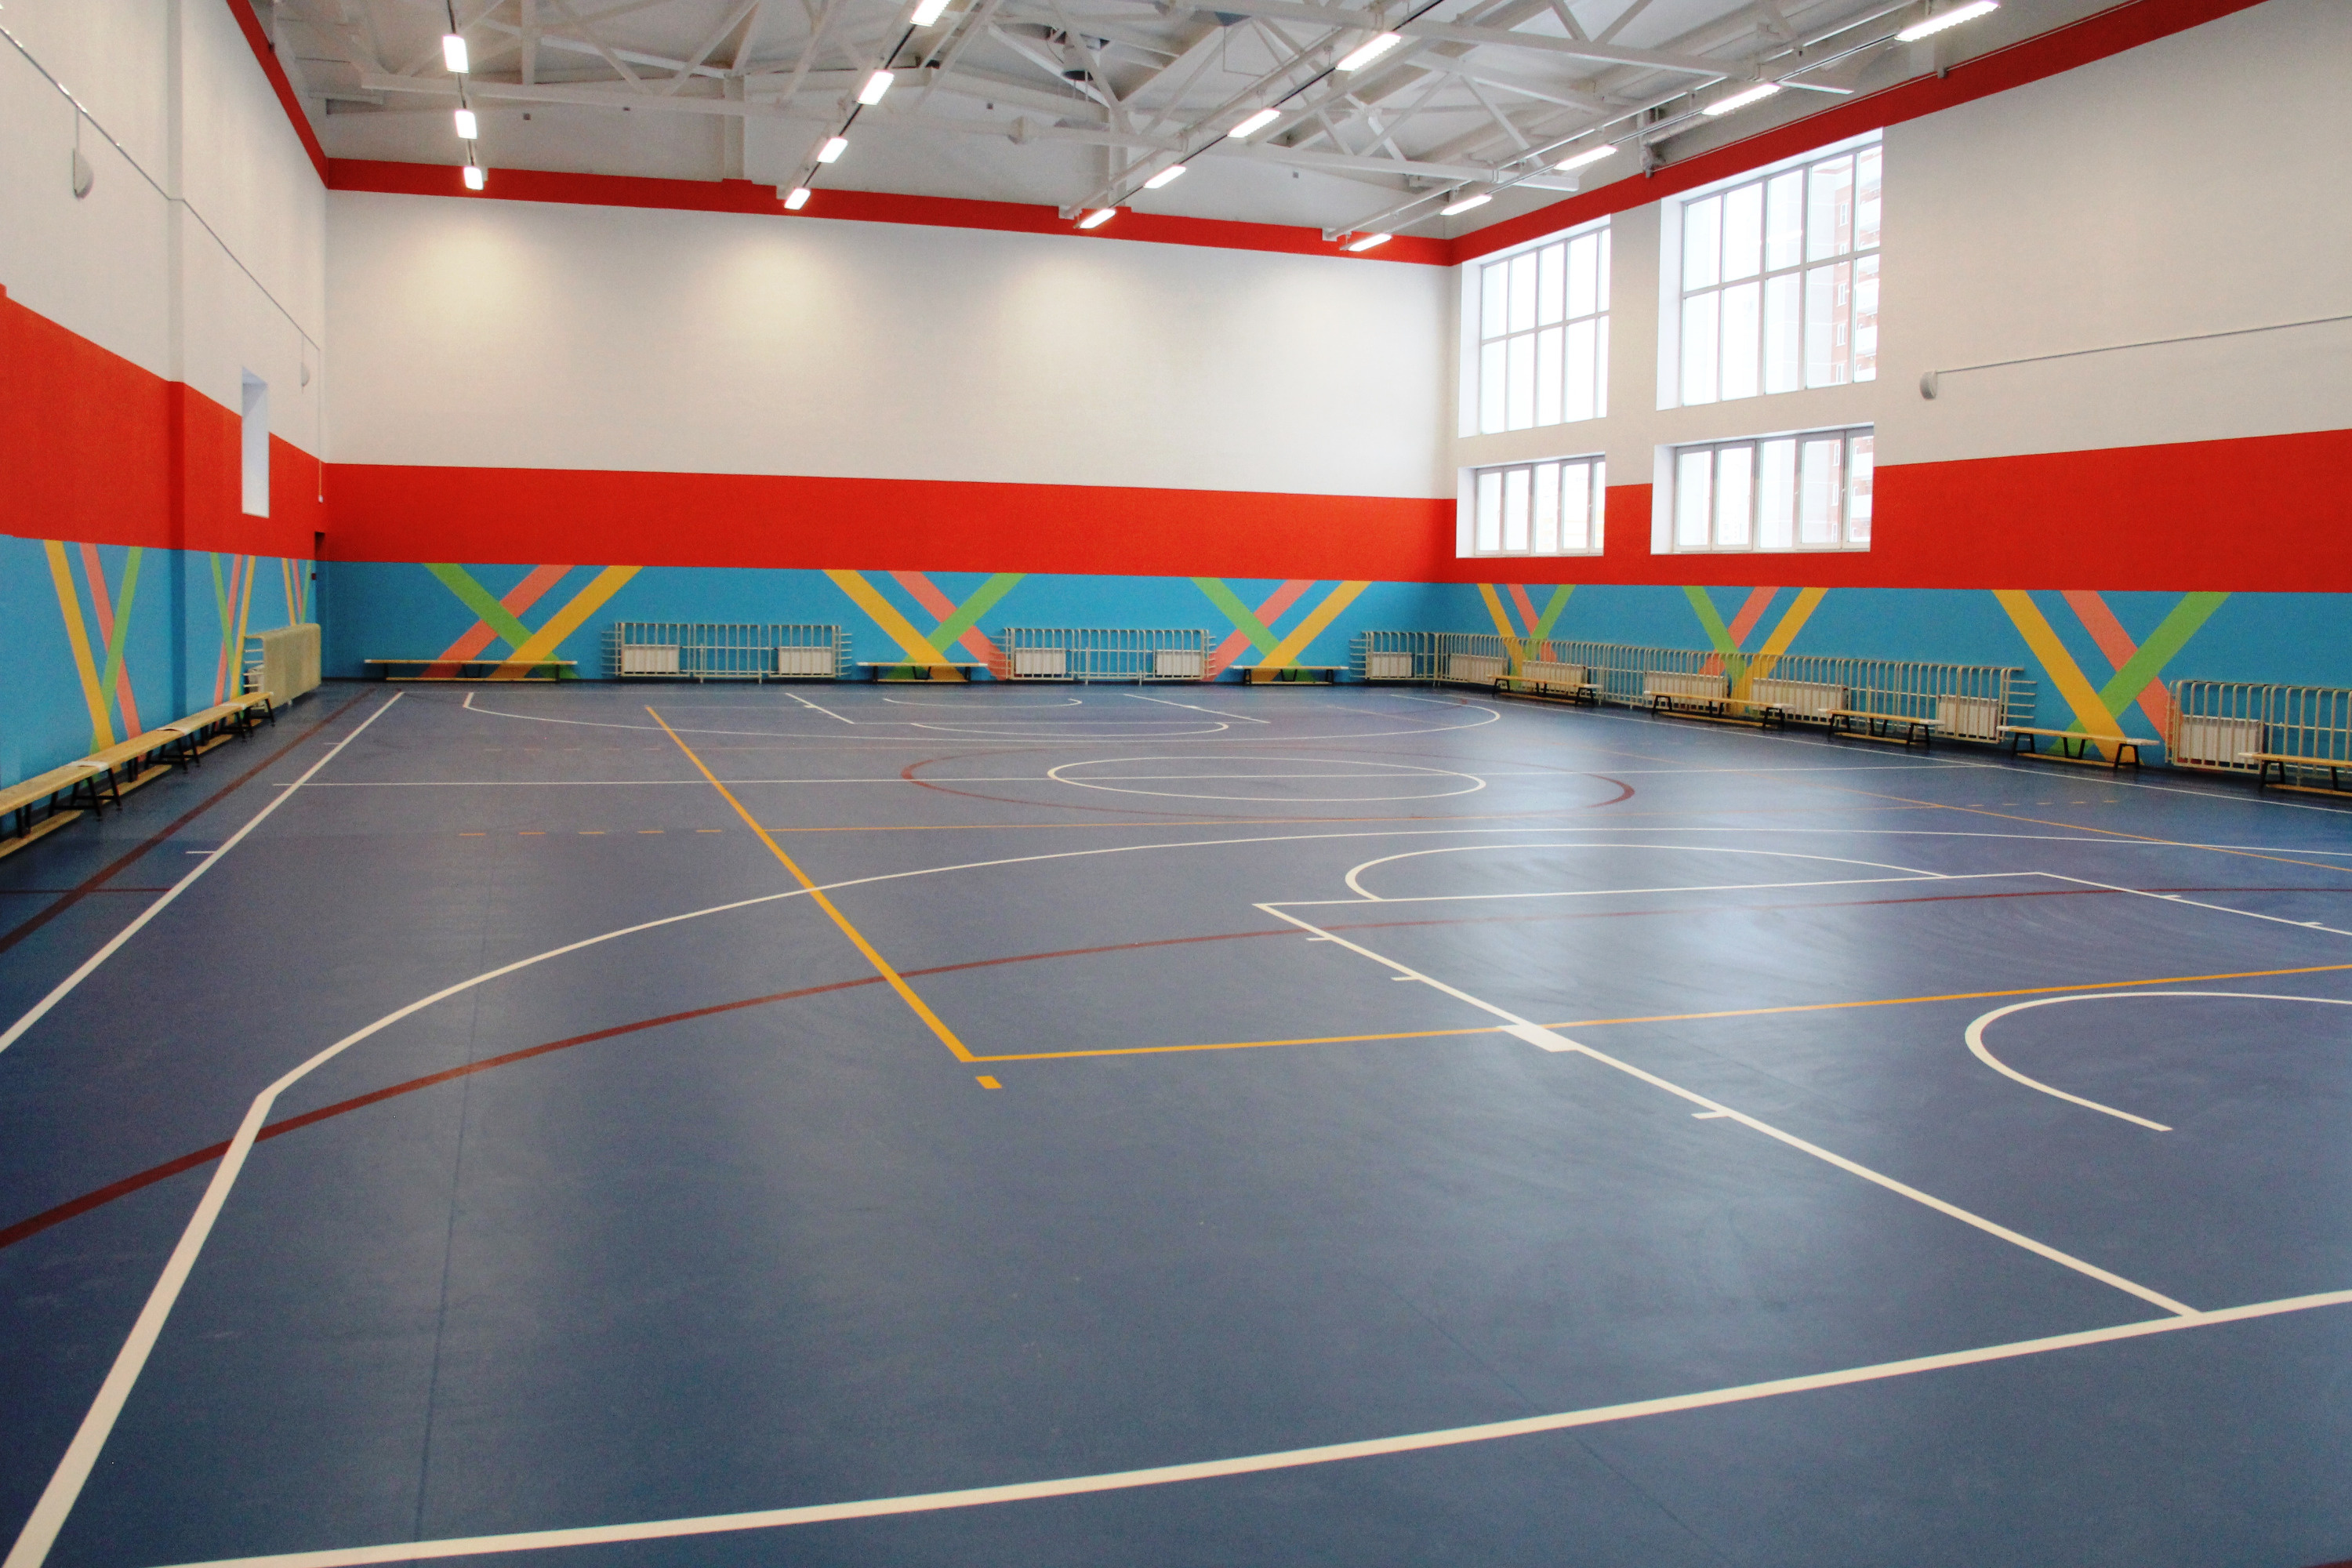 Спортивному залу явно не хватает баскетбольных колец и настенных тренажеров